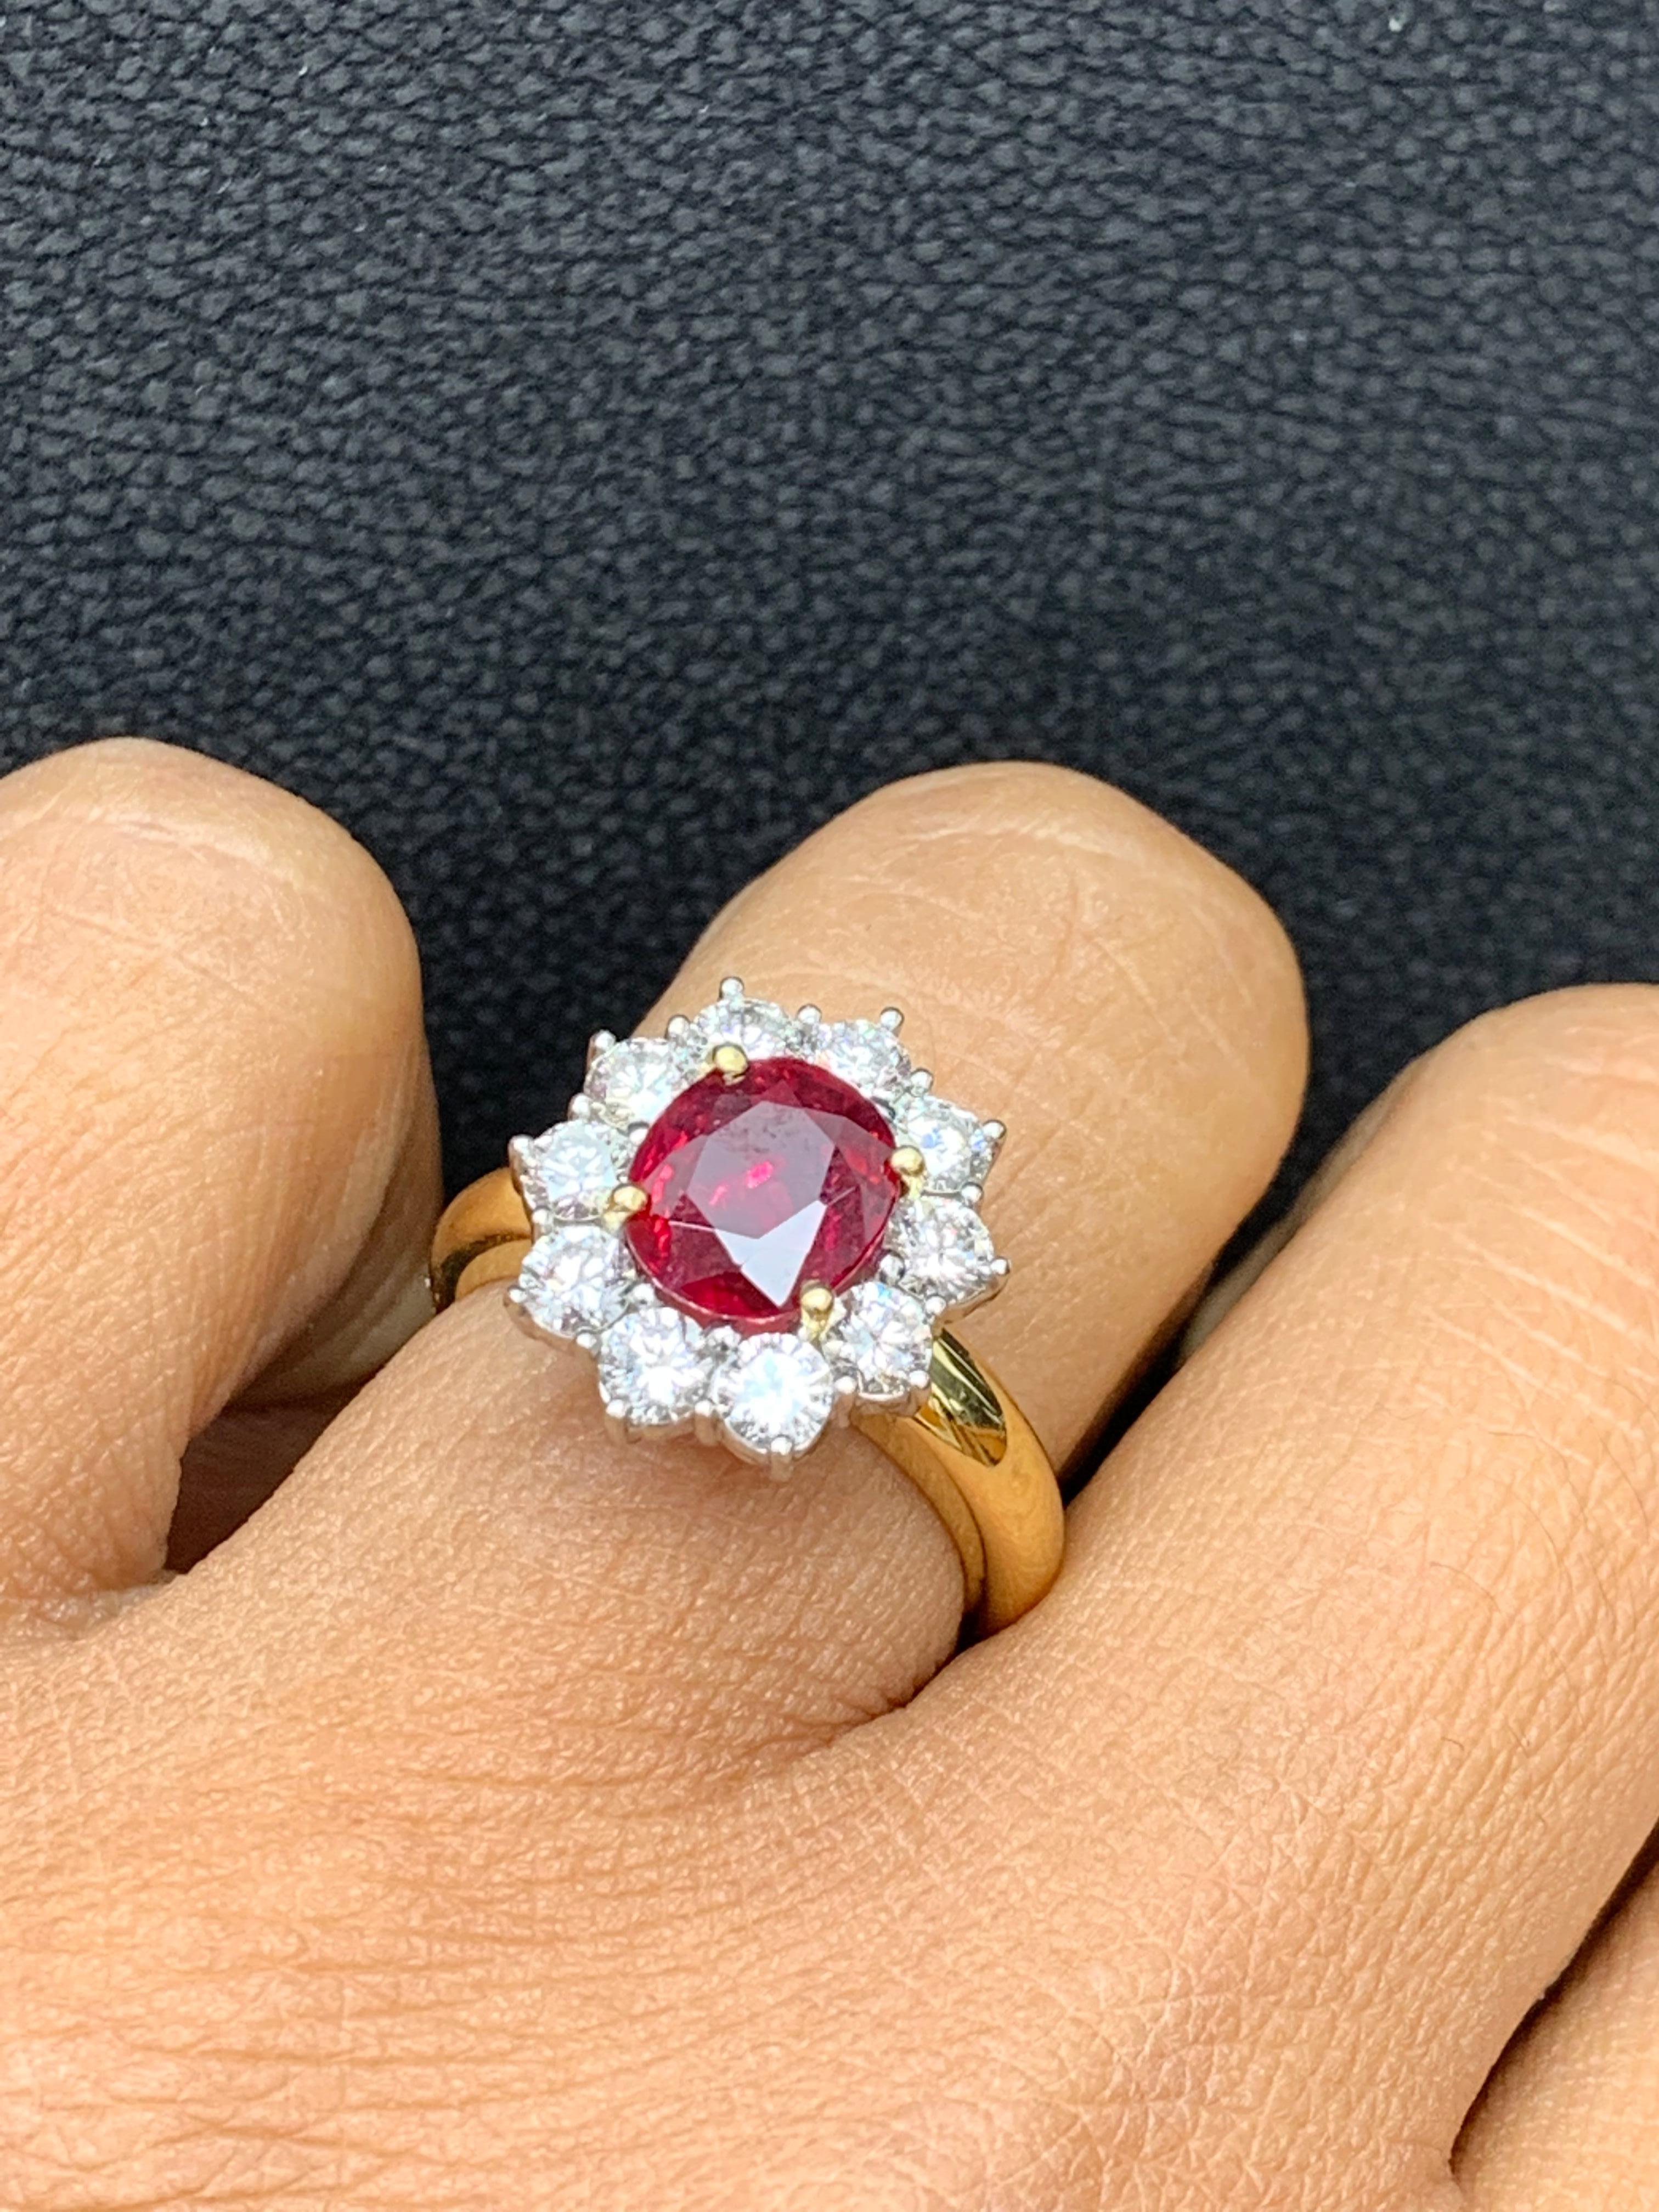 Cette bague présente 1,03 carat de diamants ronds de taille brillant entourant un luxuriant rubis rouge de taille ronde pesant 2,01 carat. La bague est fabriquée en  Or jaune et blanc 18Kmix. La taille de la bague est de 6.5 US